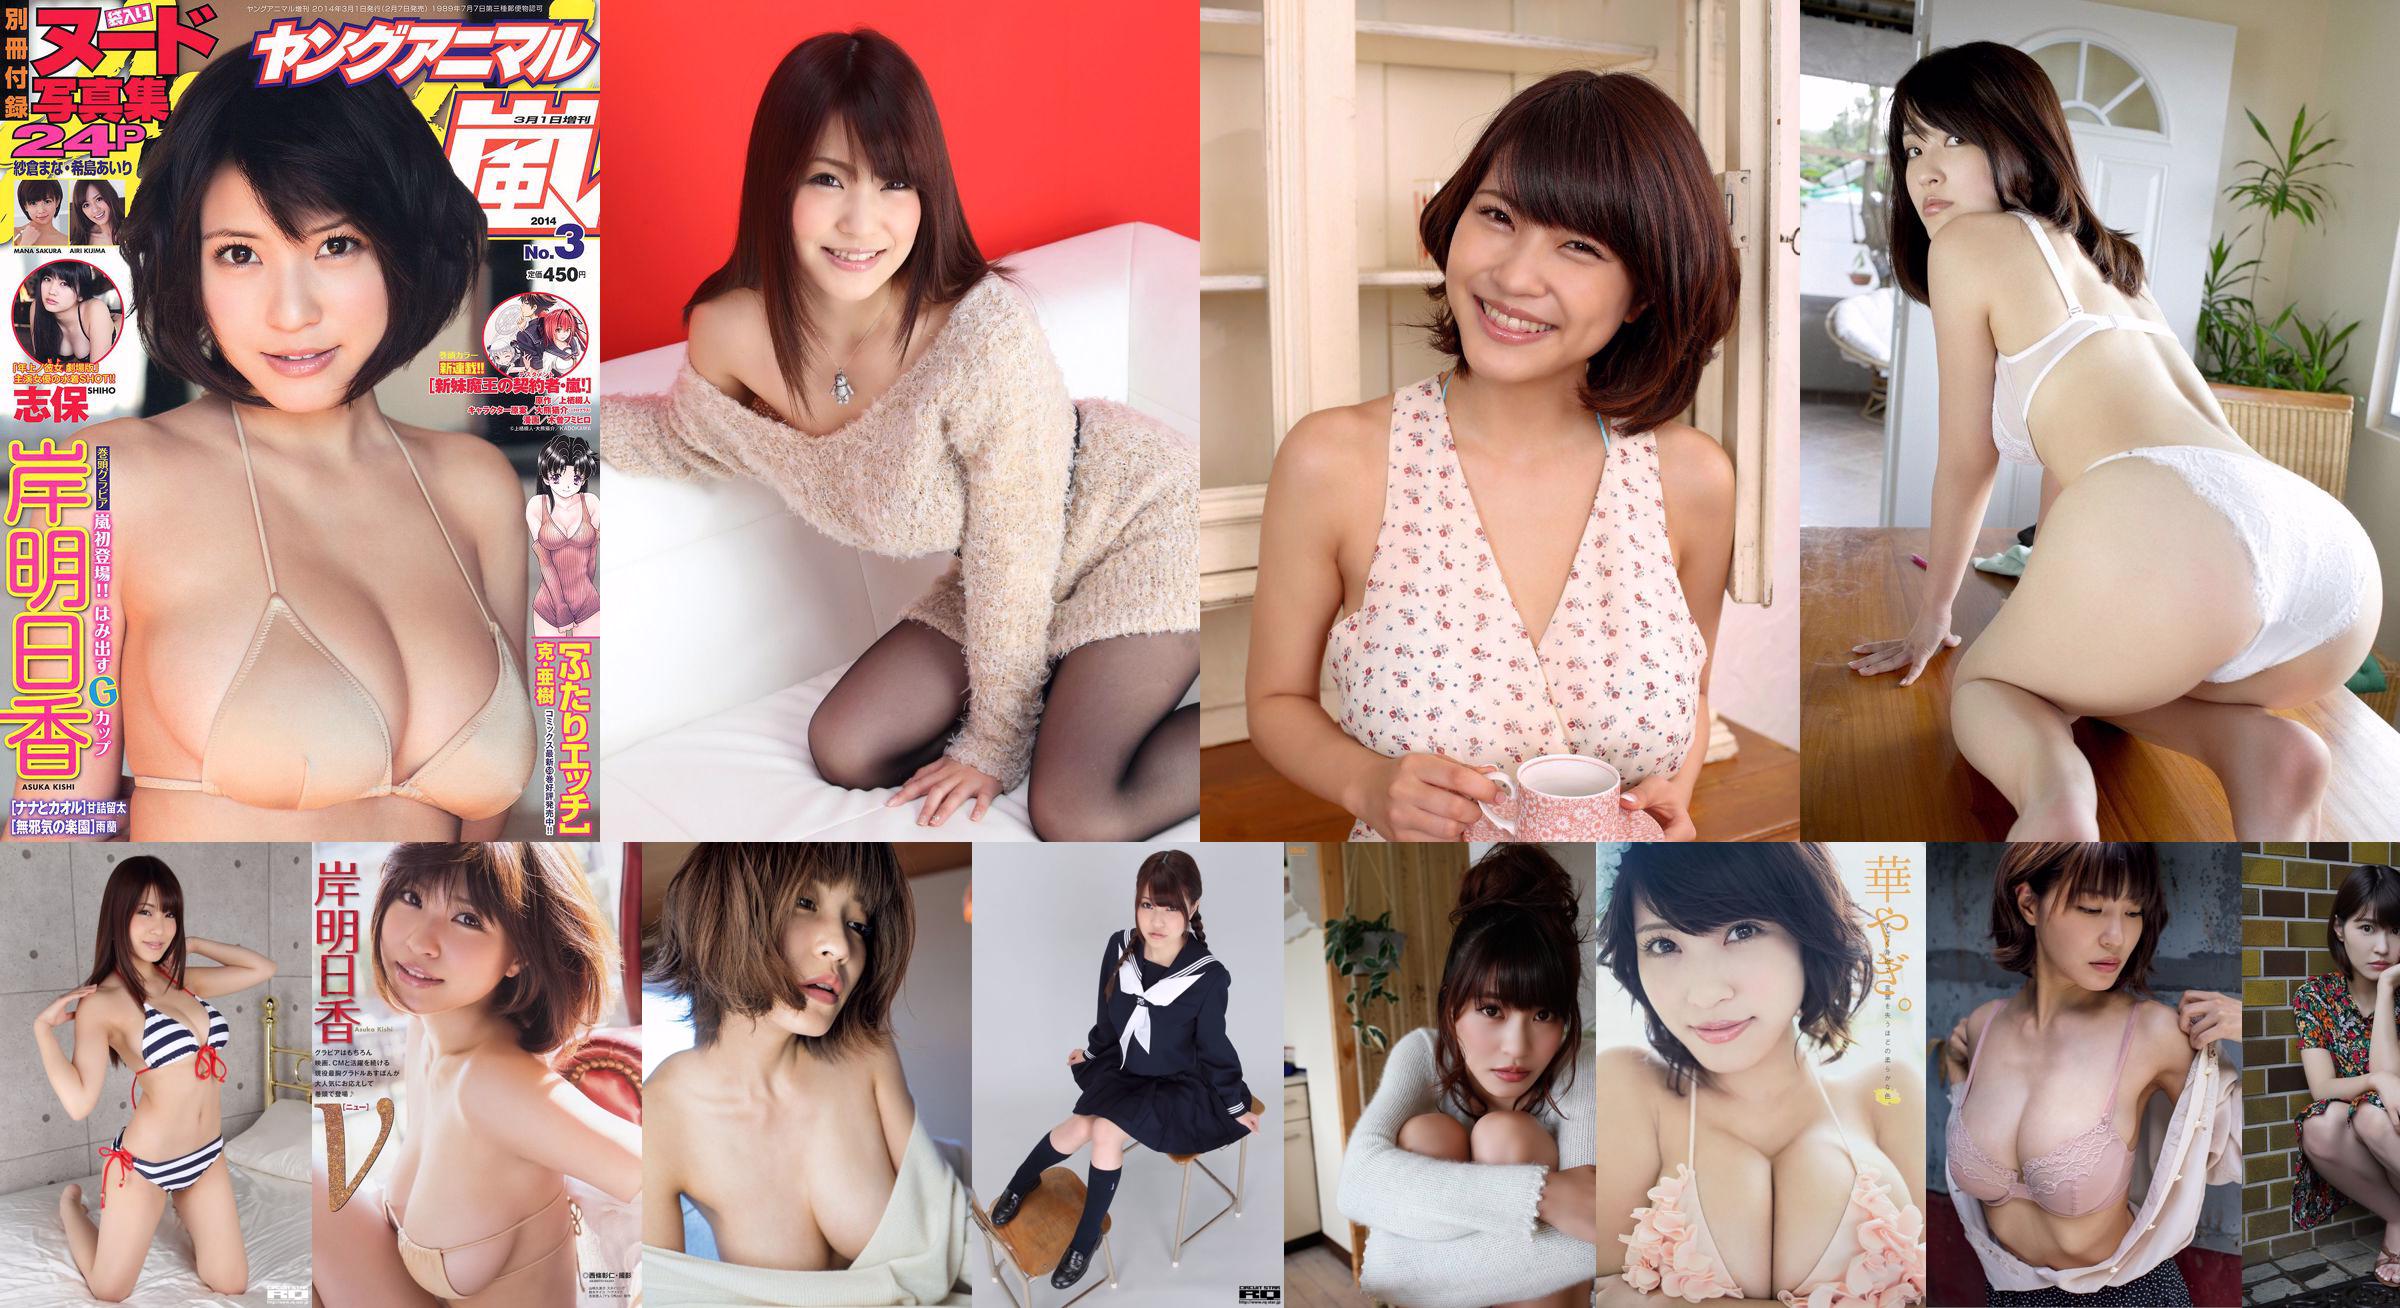 [Revista Young] Asuka Kishi Kanna Hashimoto 2014 No.20 Fotografia No.74398a Página 3